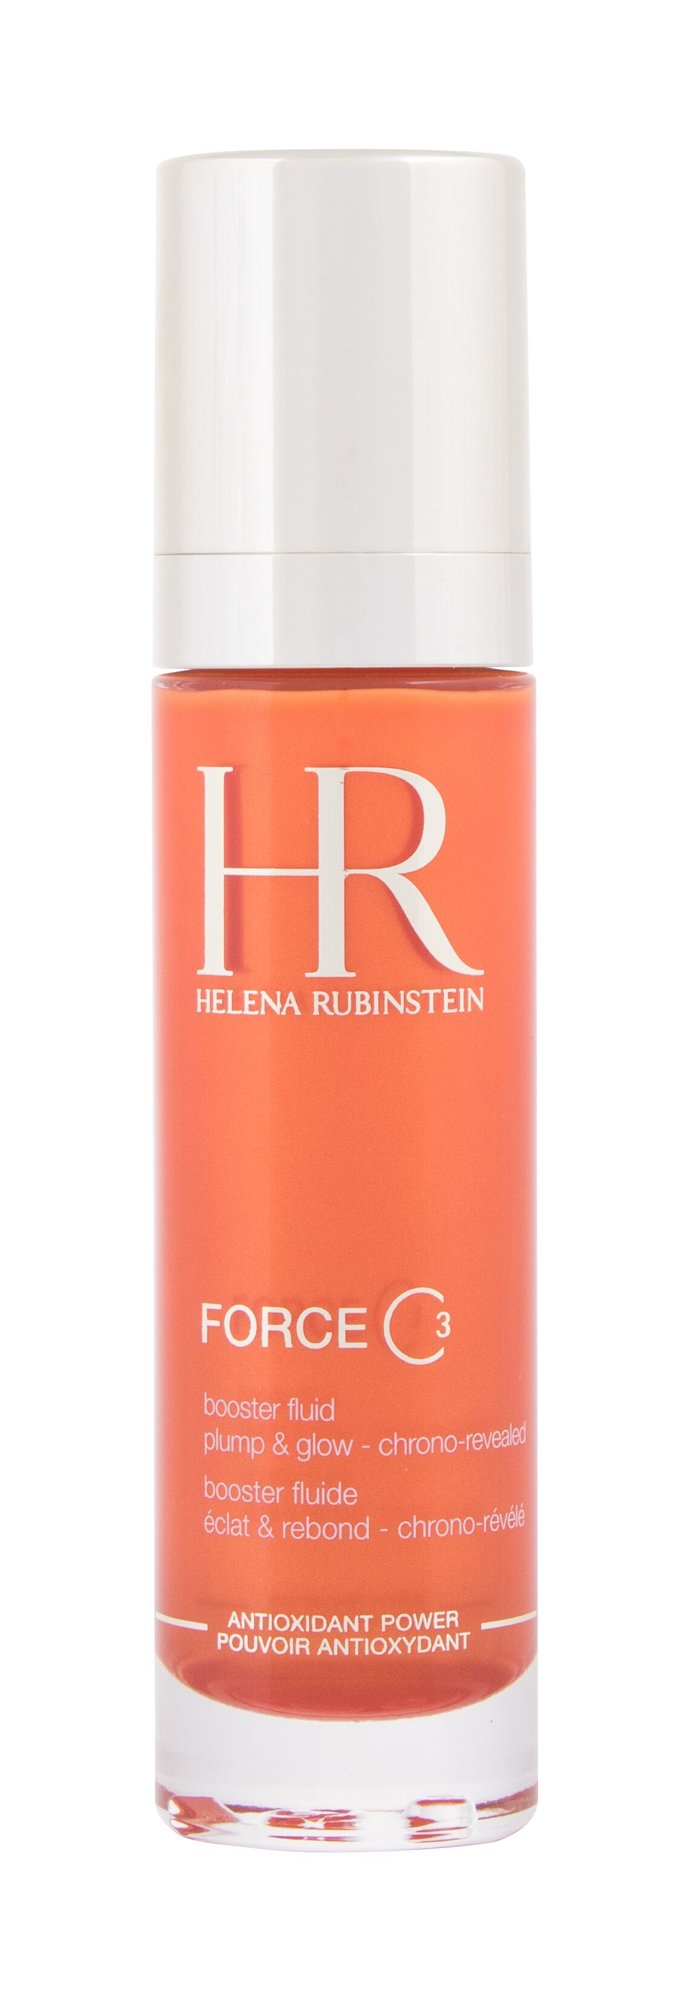 Helena Rubinstein Force C3 Veido serumas